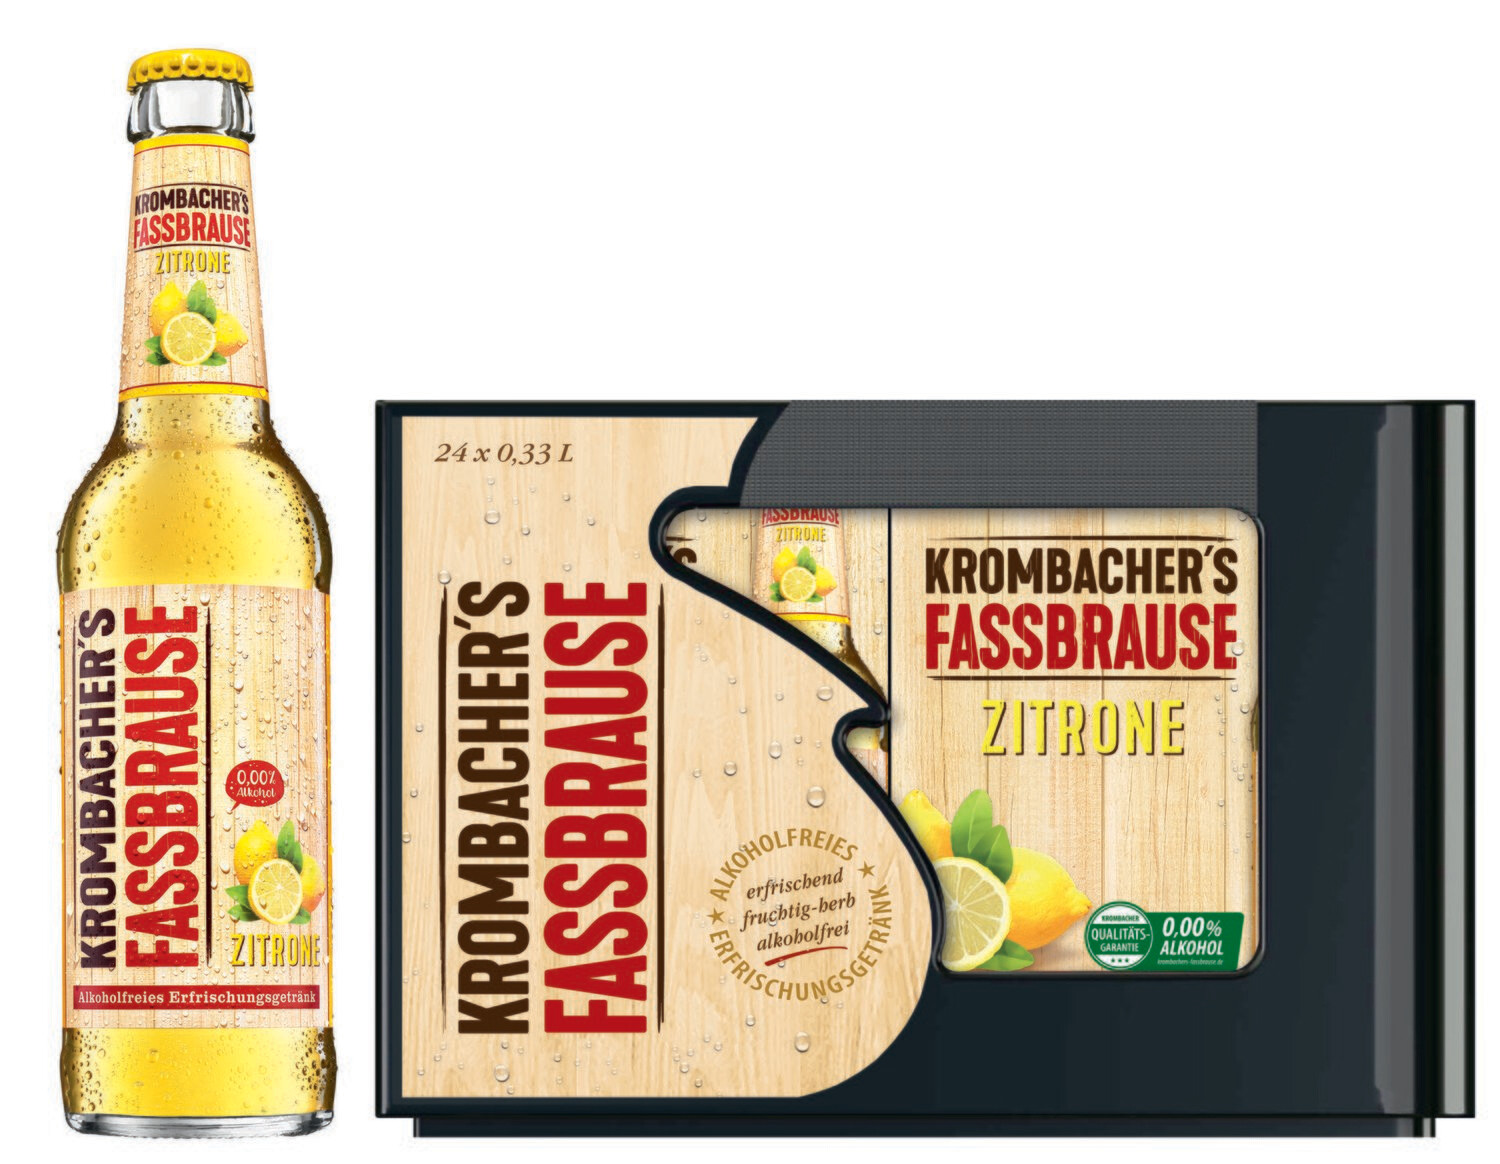 Krombacher Fassbrause Zitrone
(24x 0,33l FL Glas 20,99 € inkl. MwSt. zzgl. Pfand)